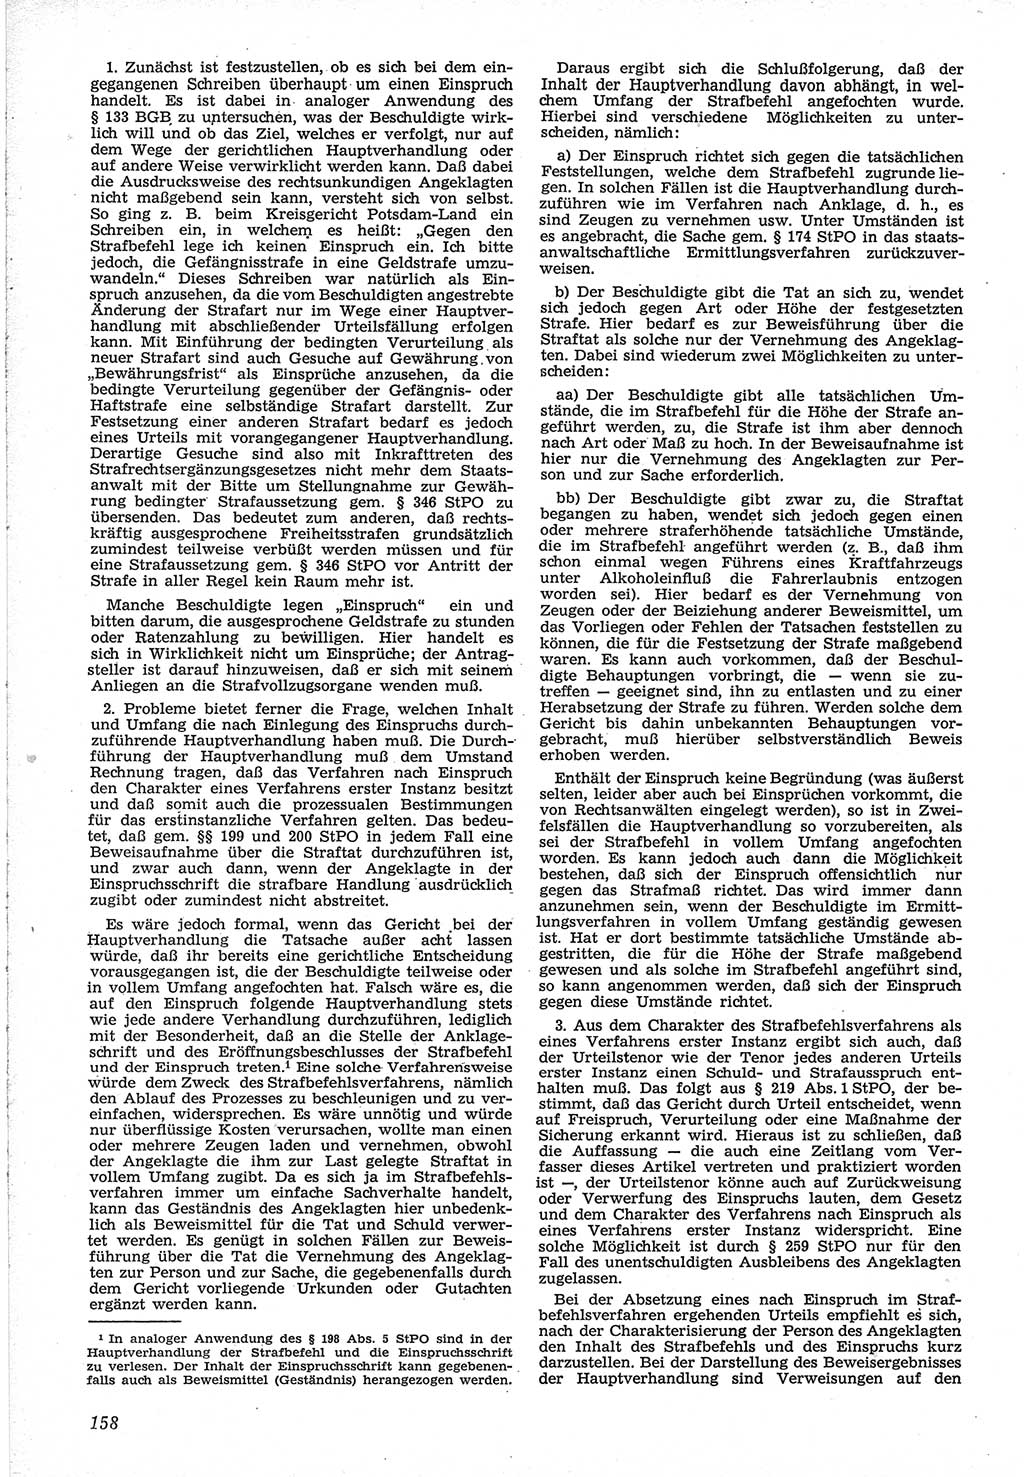 Neue Justiz (NJ), Zeitschrift für Recht und Rechtswissenschaft [Deutsche Demokratische Republik (DDR)], 12. Jahrgang 1958, Seite 158 (NJ DDR 1958, S. 158)